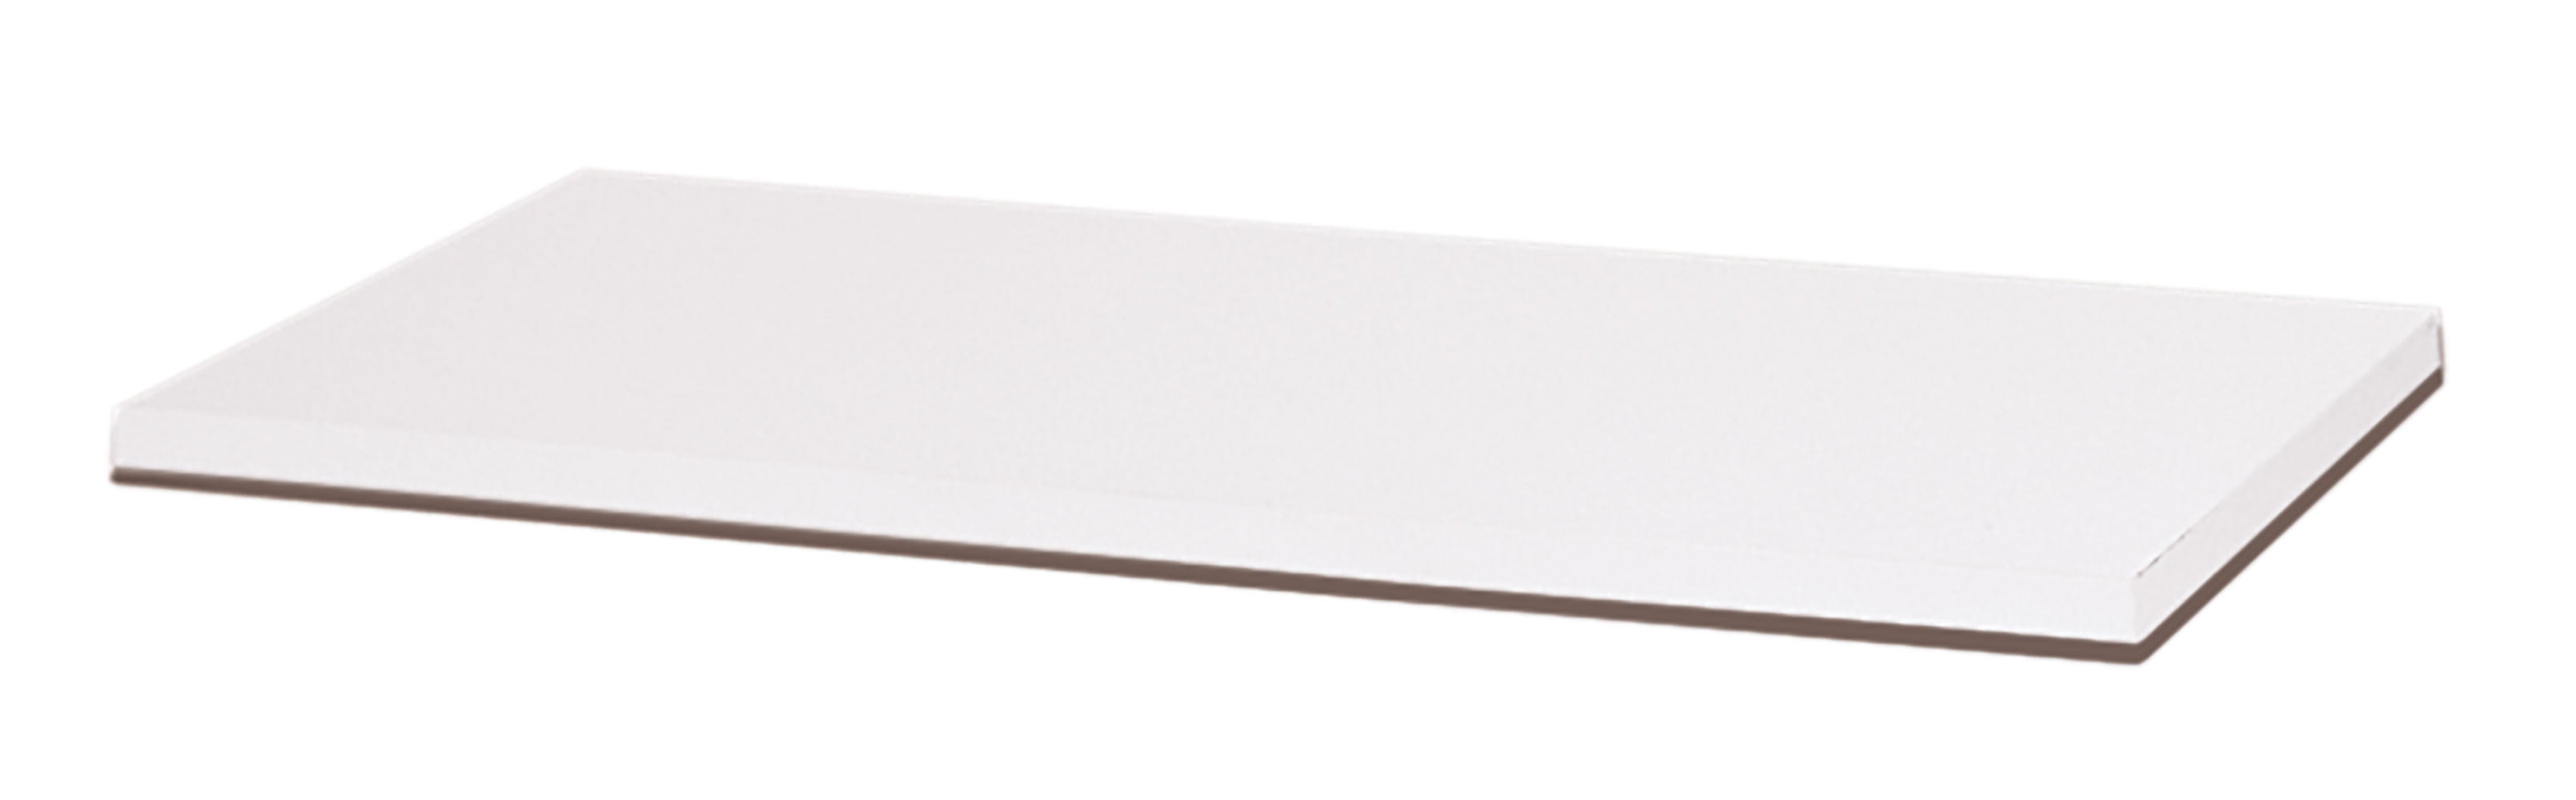 White Finished Melamine Shelf with PVC Edge Banded 12 X 36 Inch 